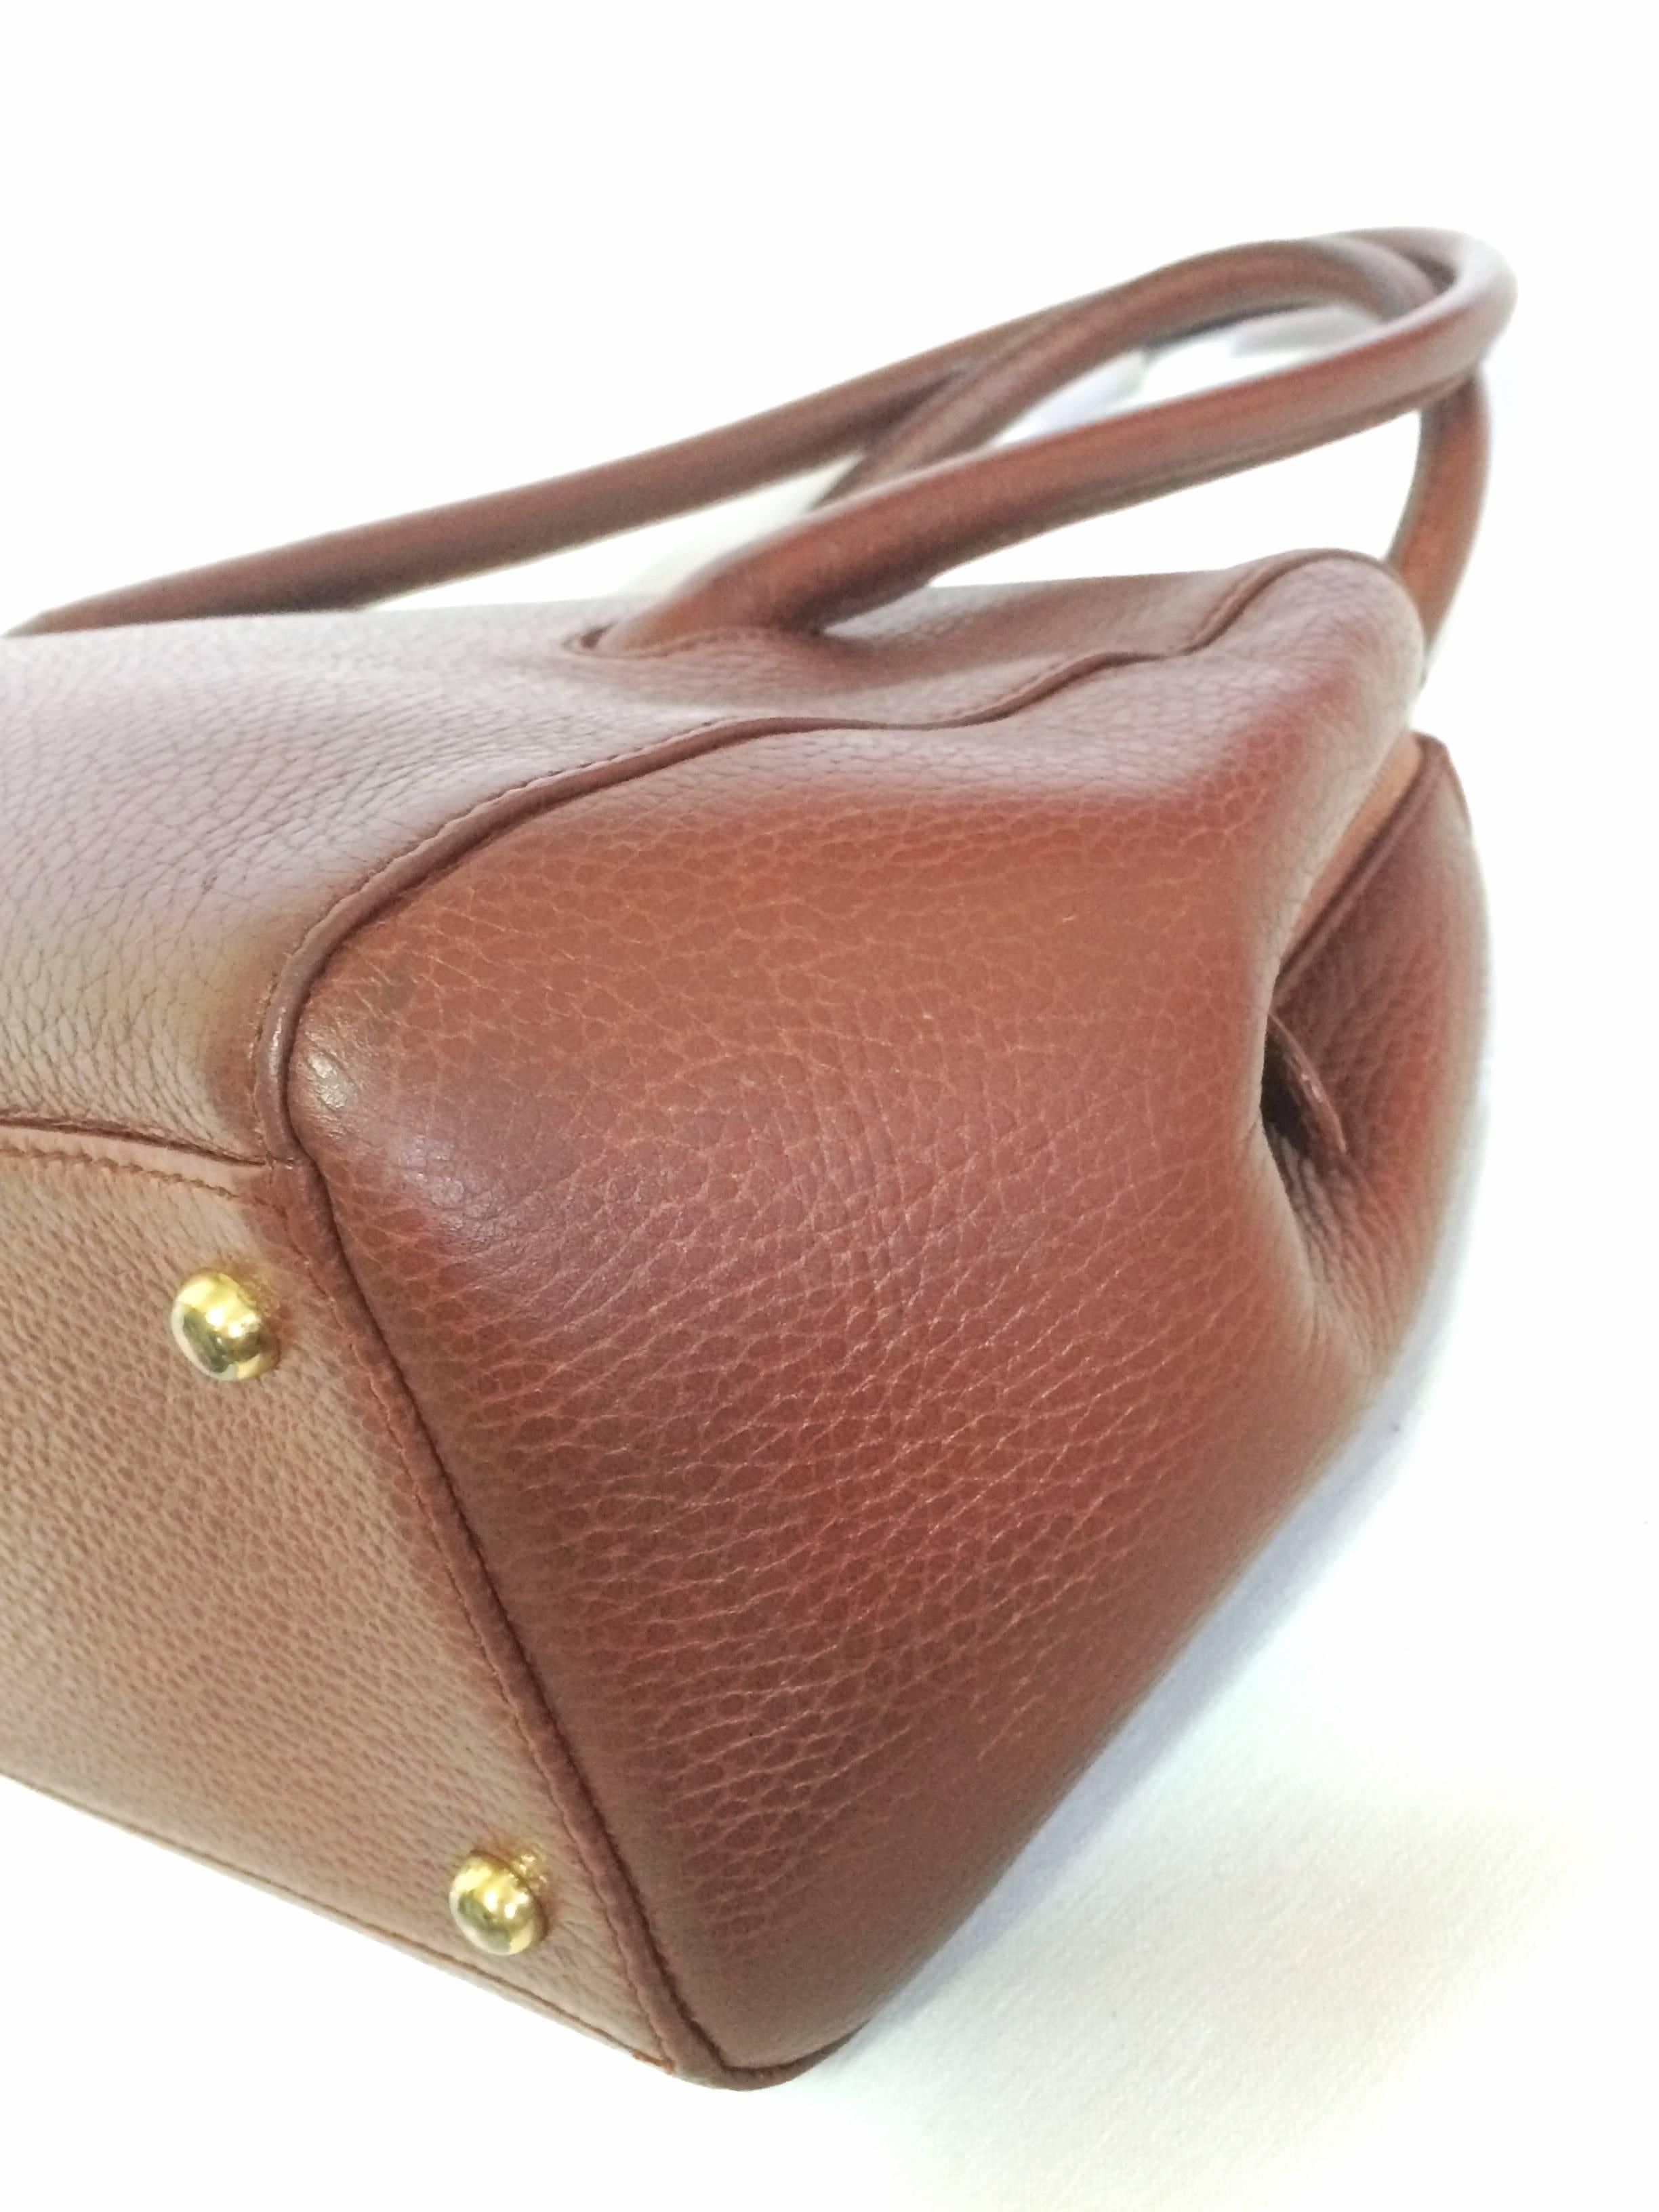 Vintage Cartier classic brown leather handbag with logo.  les must de Cartier 2